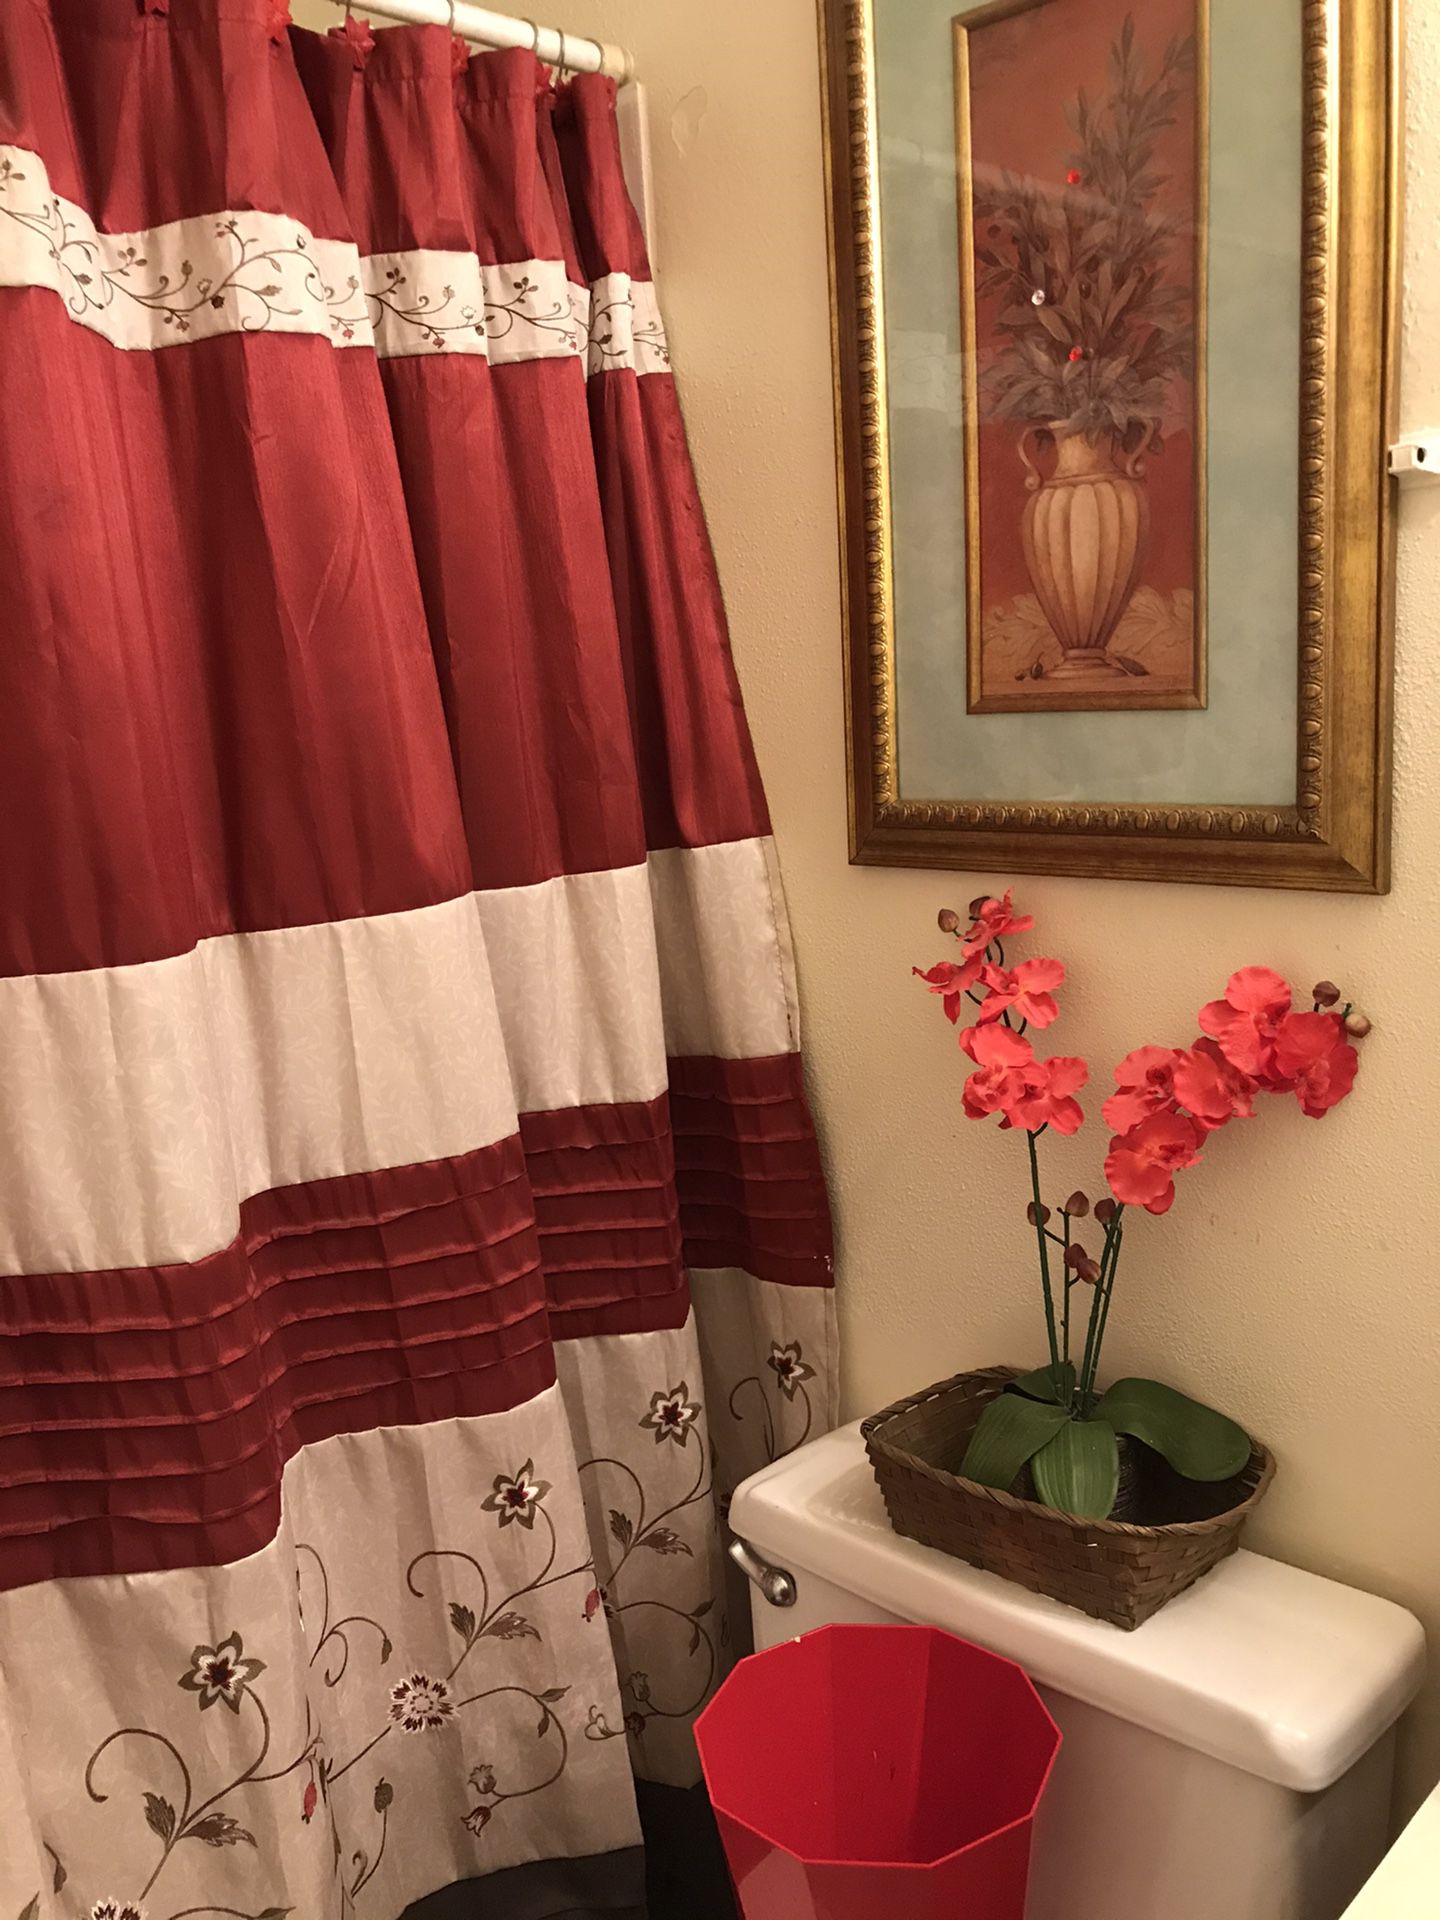 Shower curtains,picture frame,flower pot,trash bin